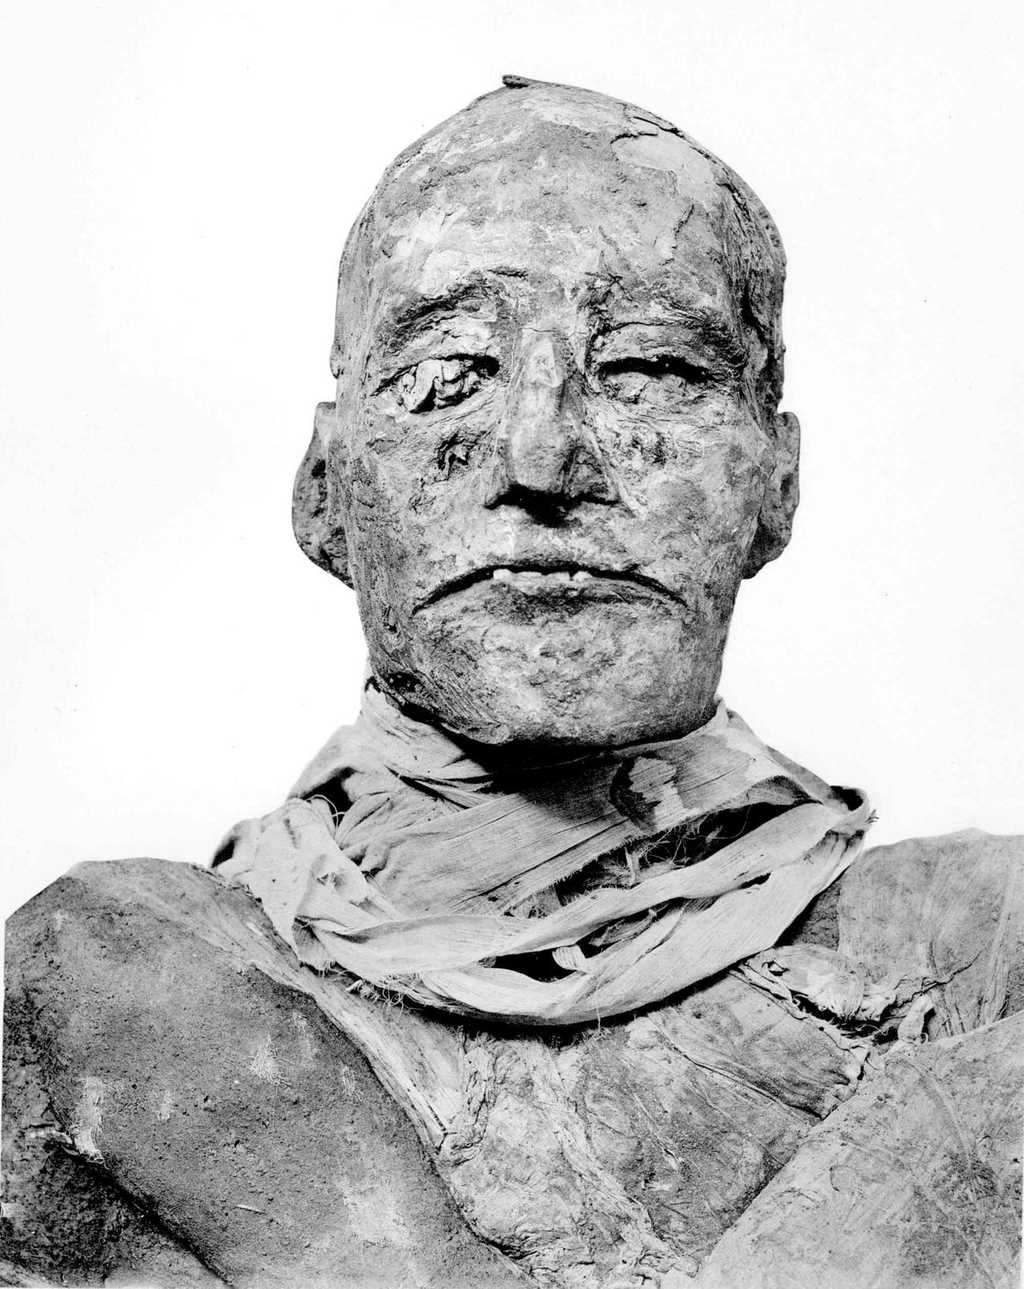 La momie de Ramsès III. Le règne de ce pharaon a duré plus de 31 ans. Il n'a cessé de lutter contre la corruption qui gangrenait son pays. © Zahi Hawass et al. 2012, British Medical Journal